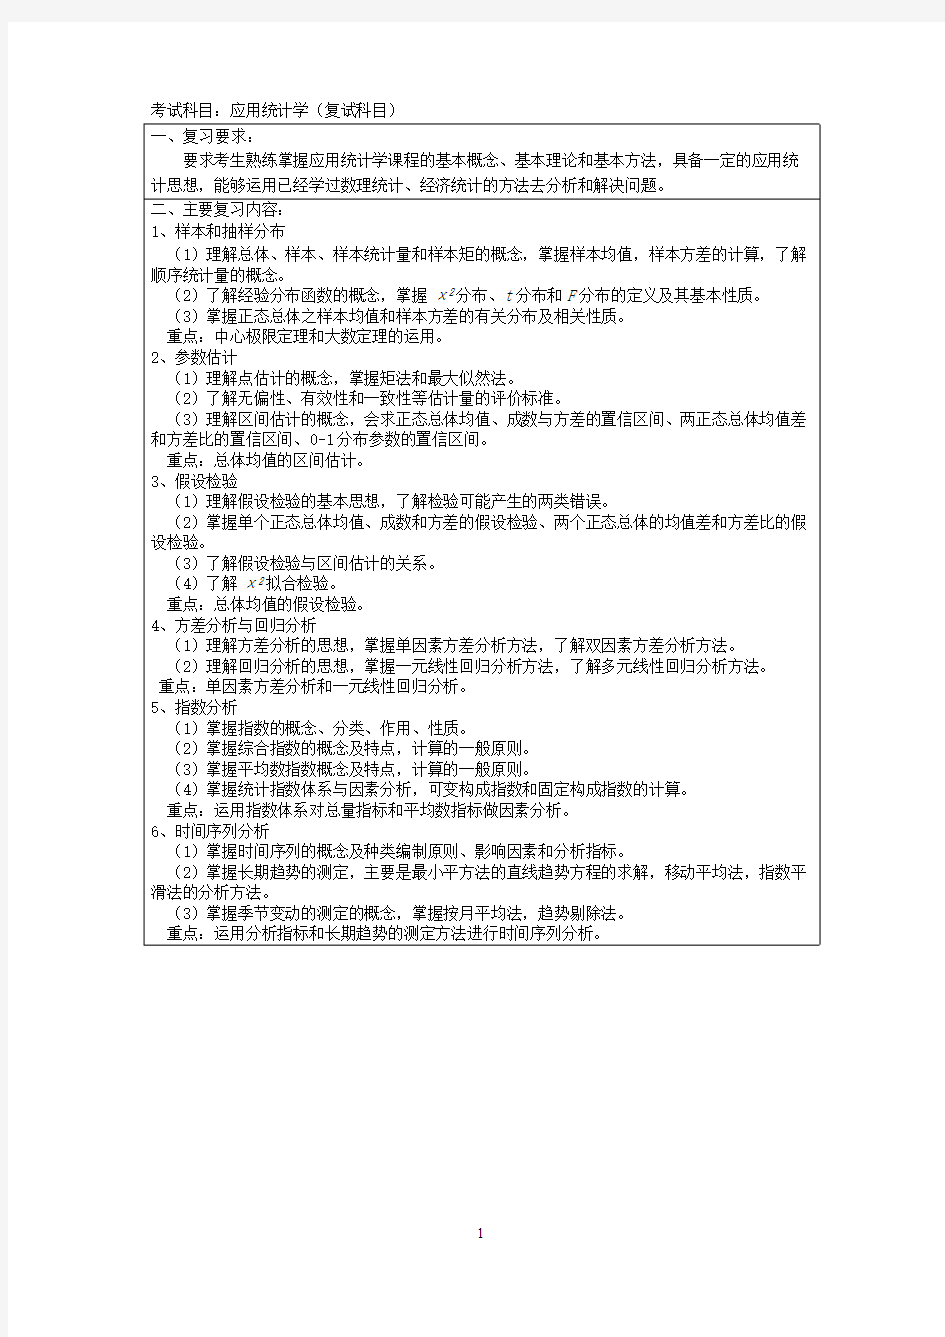 上海大学《应用统计学》2019年考研专业课复试大纲